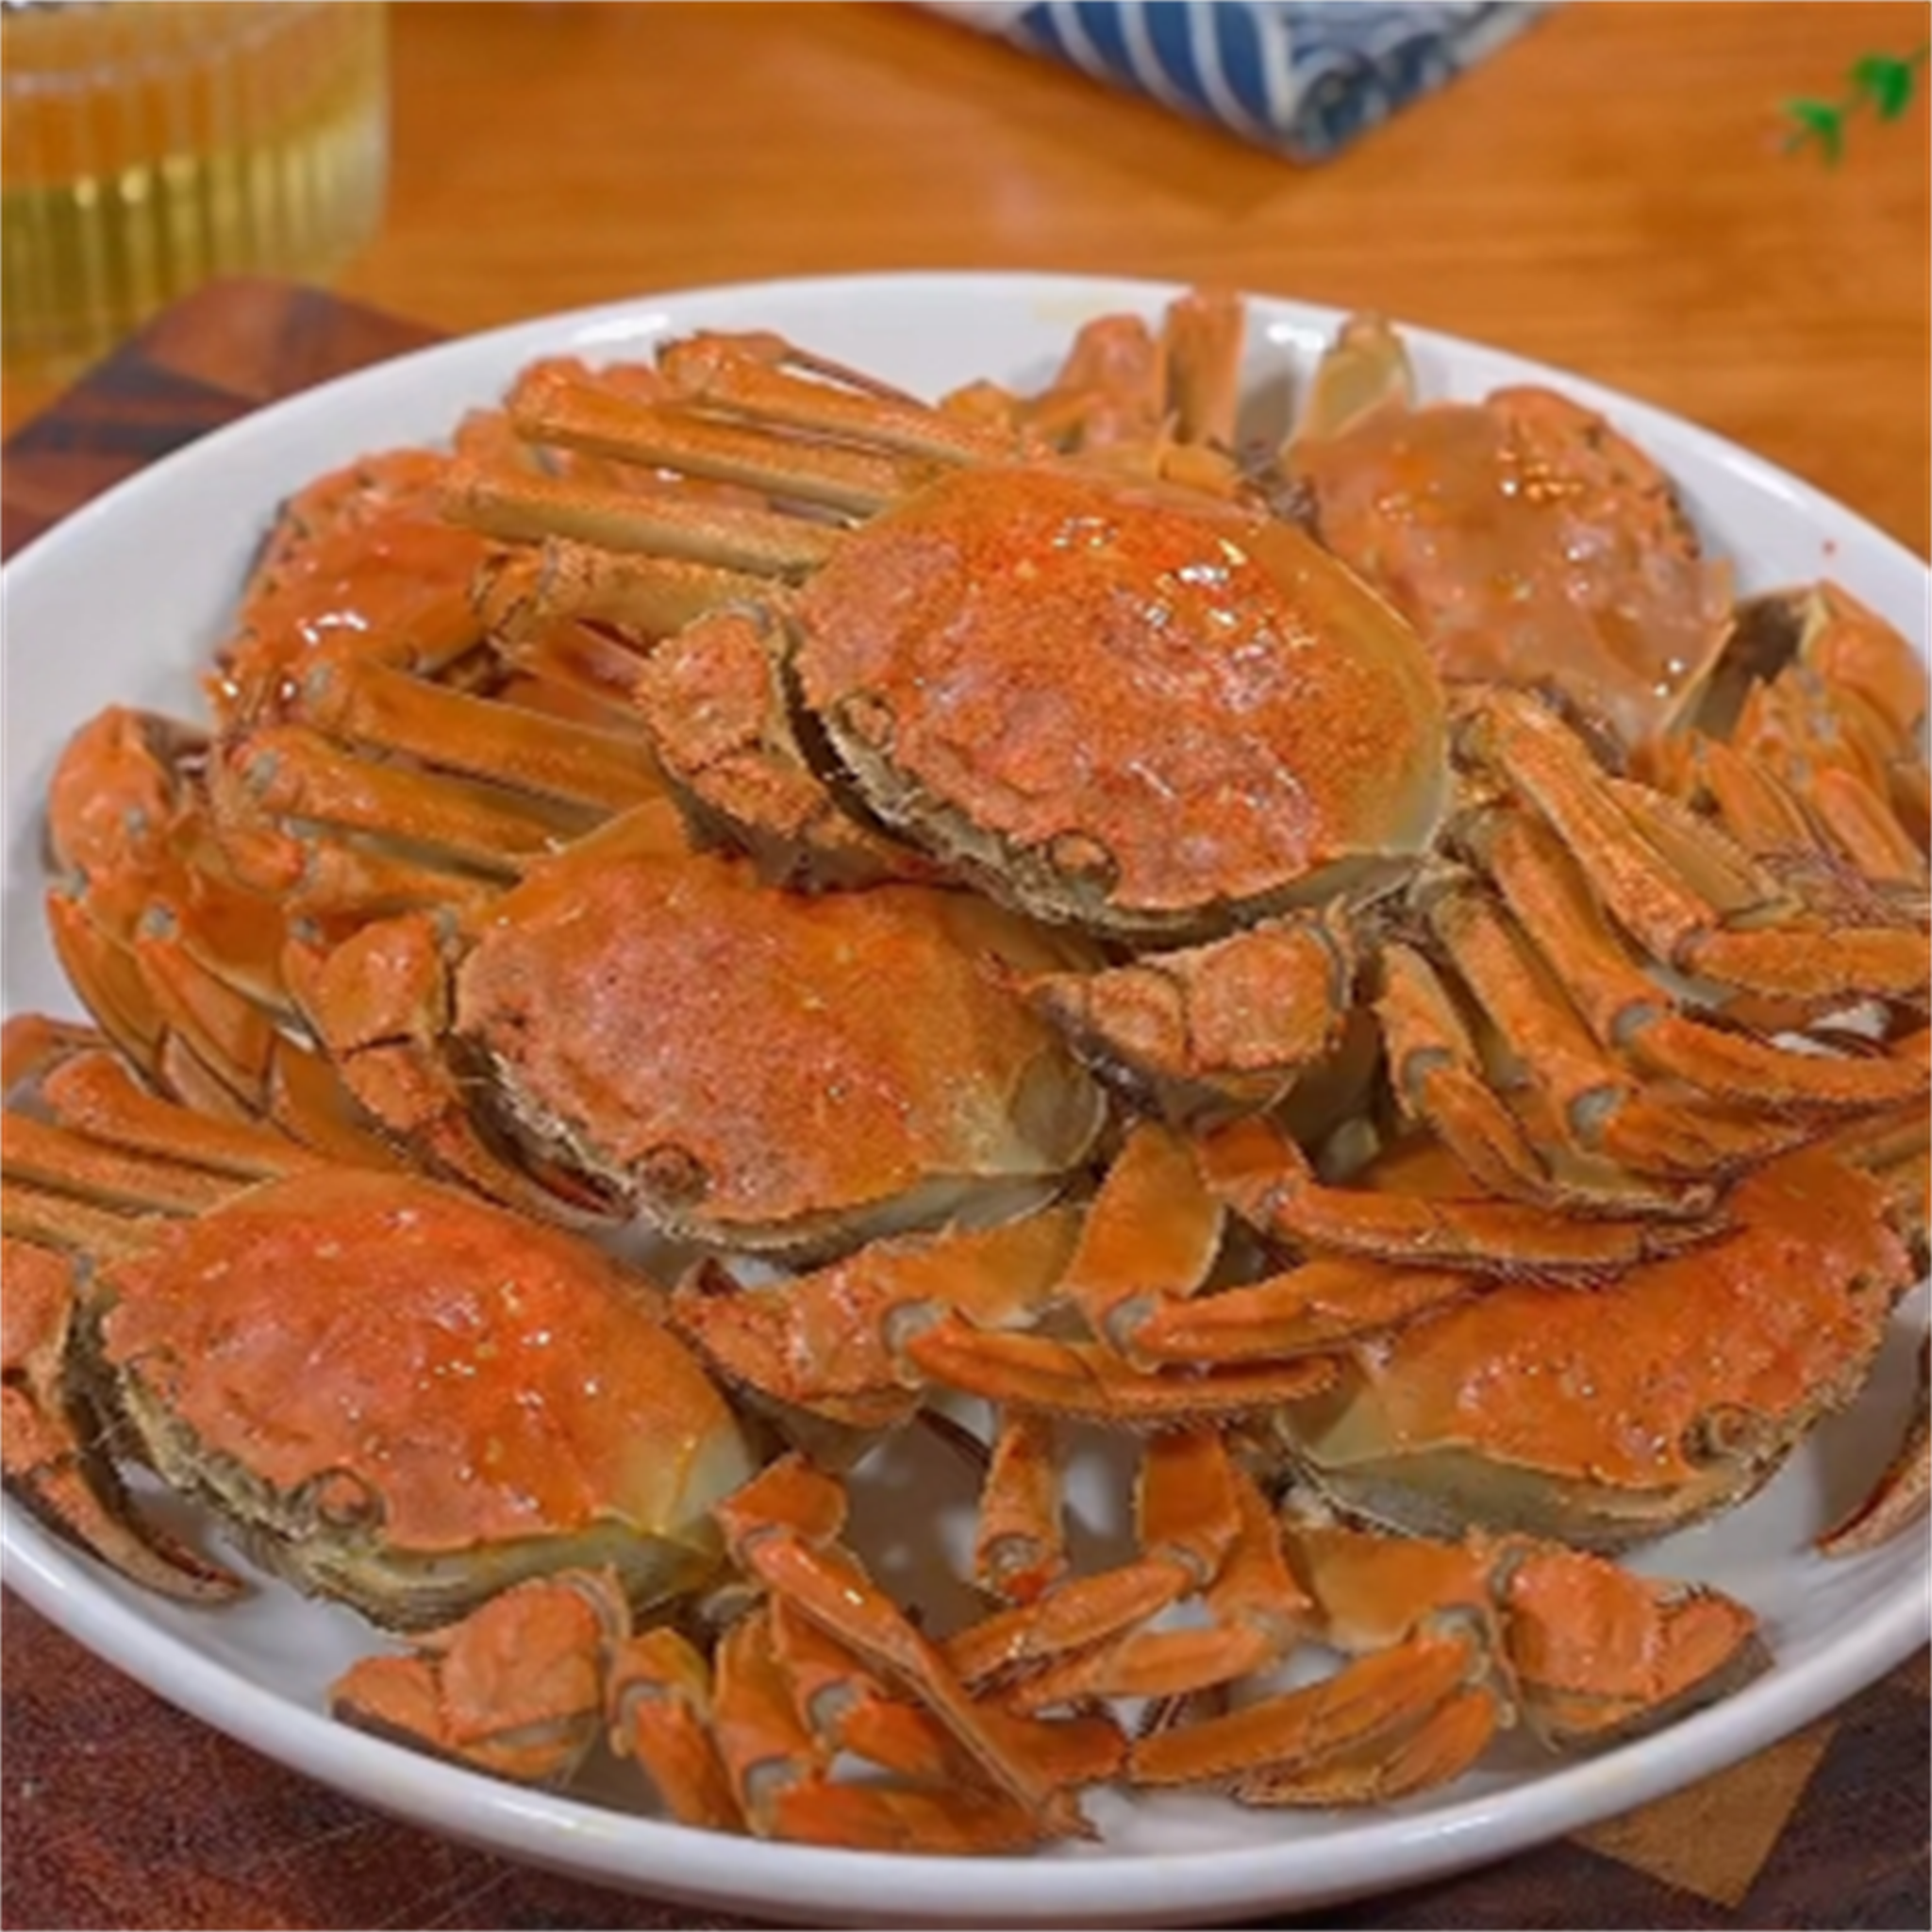 白水煮螃蟹的做法:客家人啊天教你做原汁原味白水煮螃蟹!